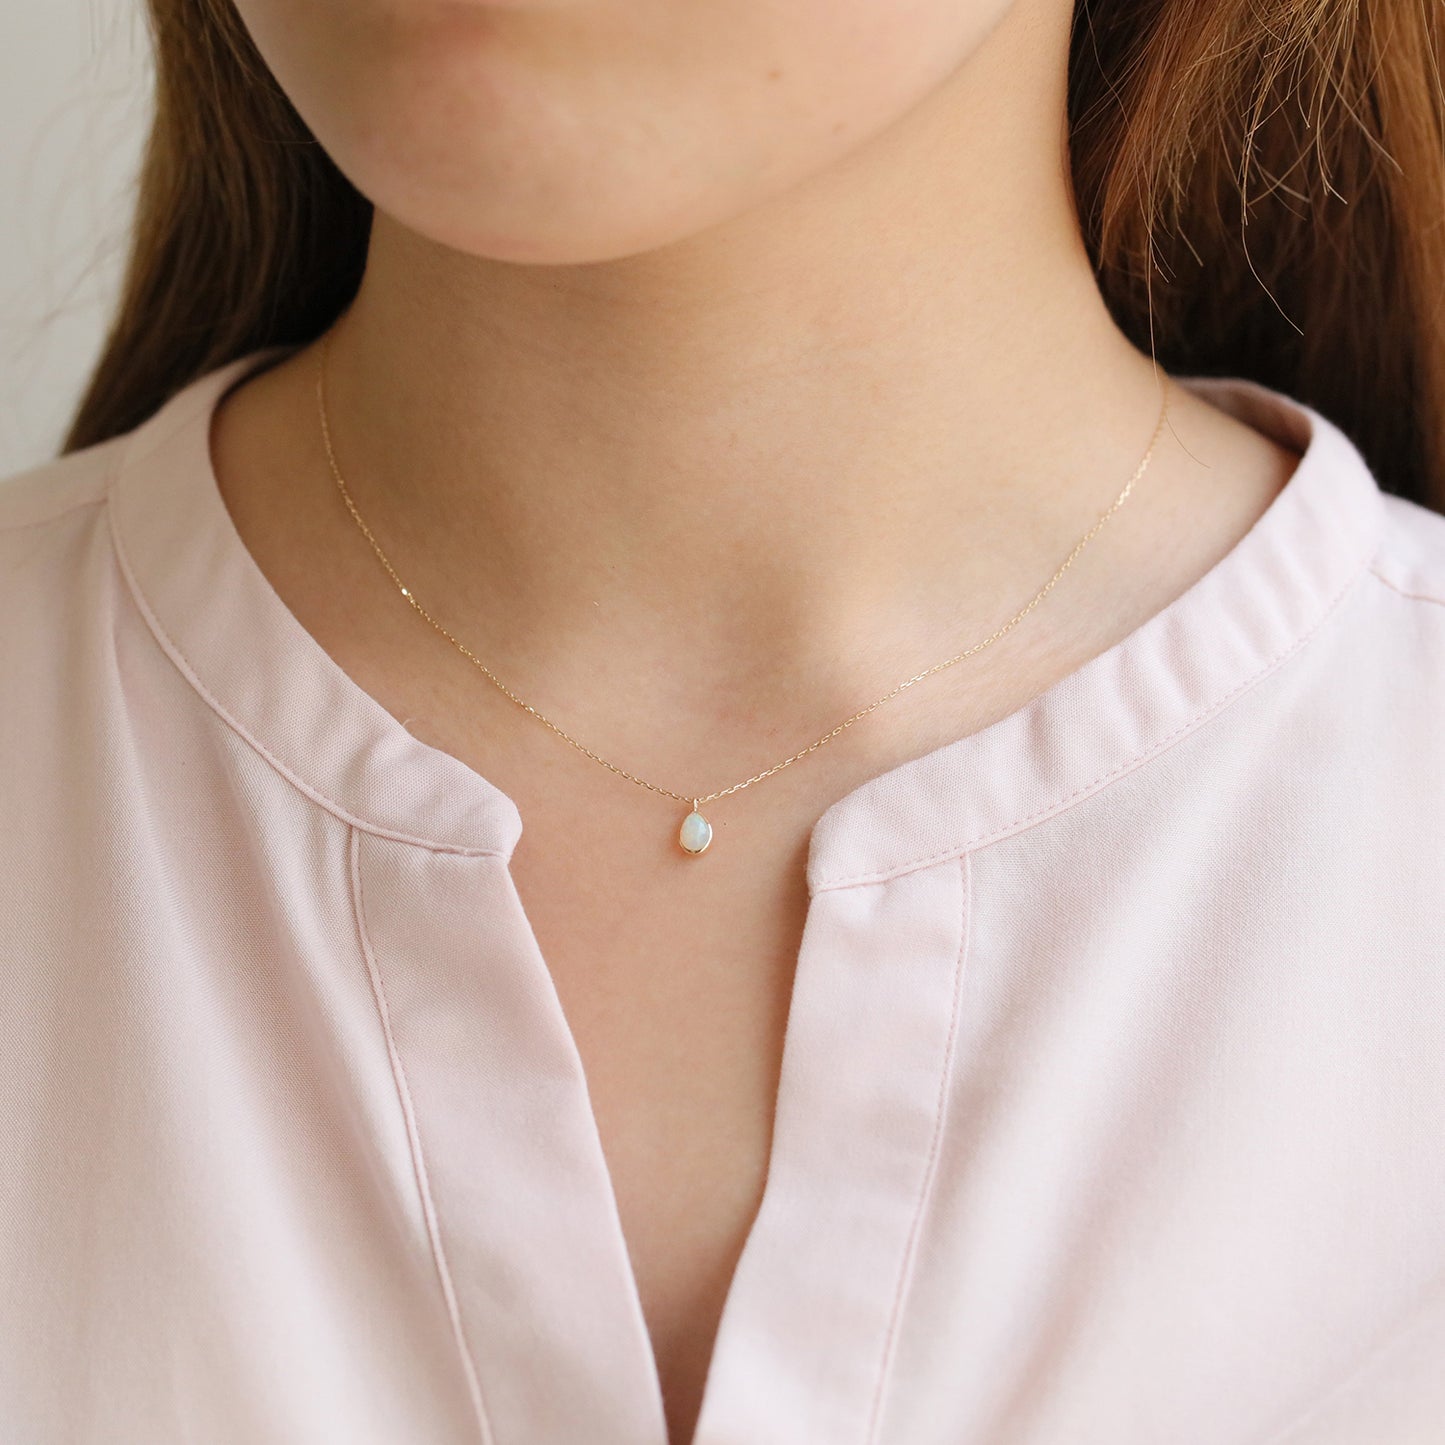 K10 Opal Necklace | 63-7996